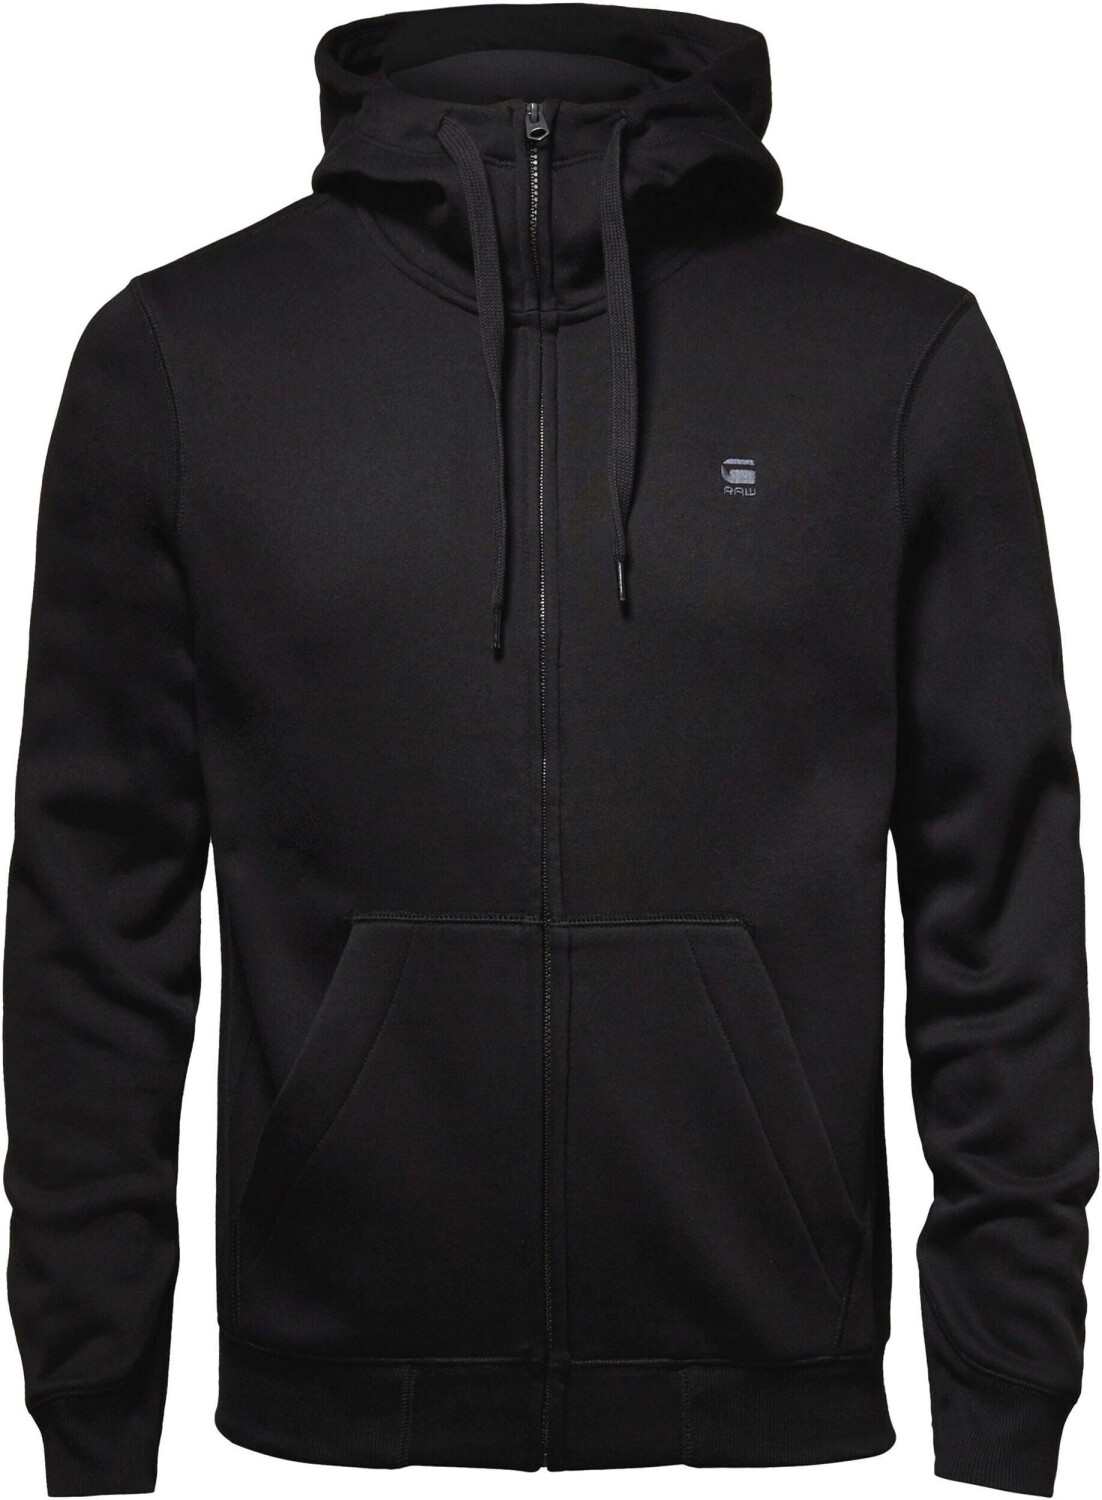 – Hooded on Sweatshirt Premium Buy from G-Star Zip Core Best (Today) Deals £44.00